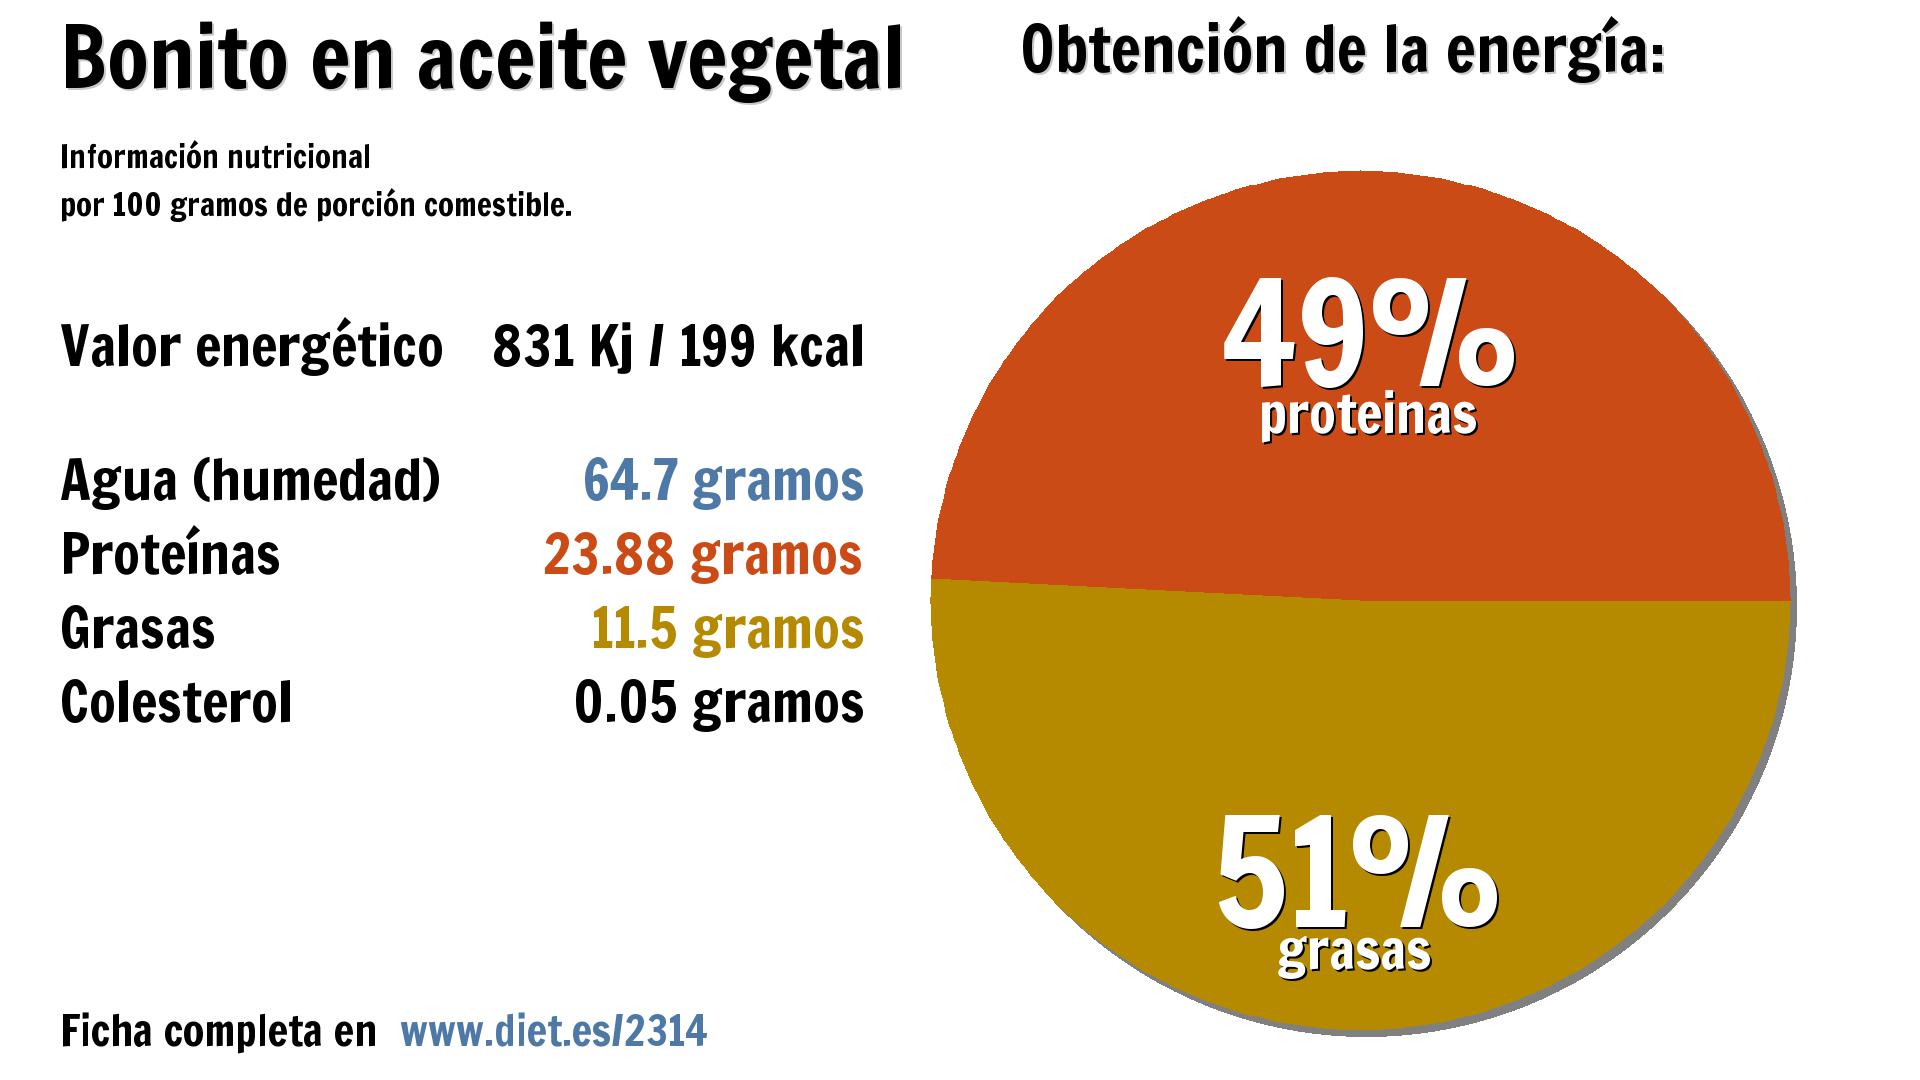 Bonito en aceite vegetal: energía 831 Kj, agua 65 g., proteínas 24 g. y grasas 12 g.